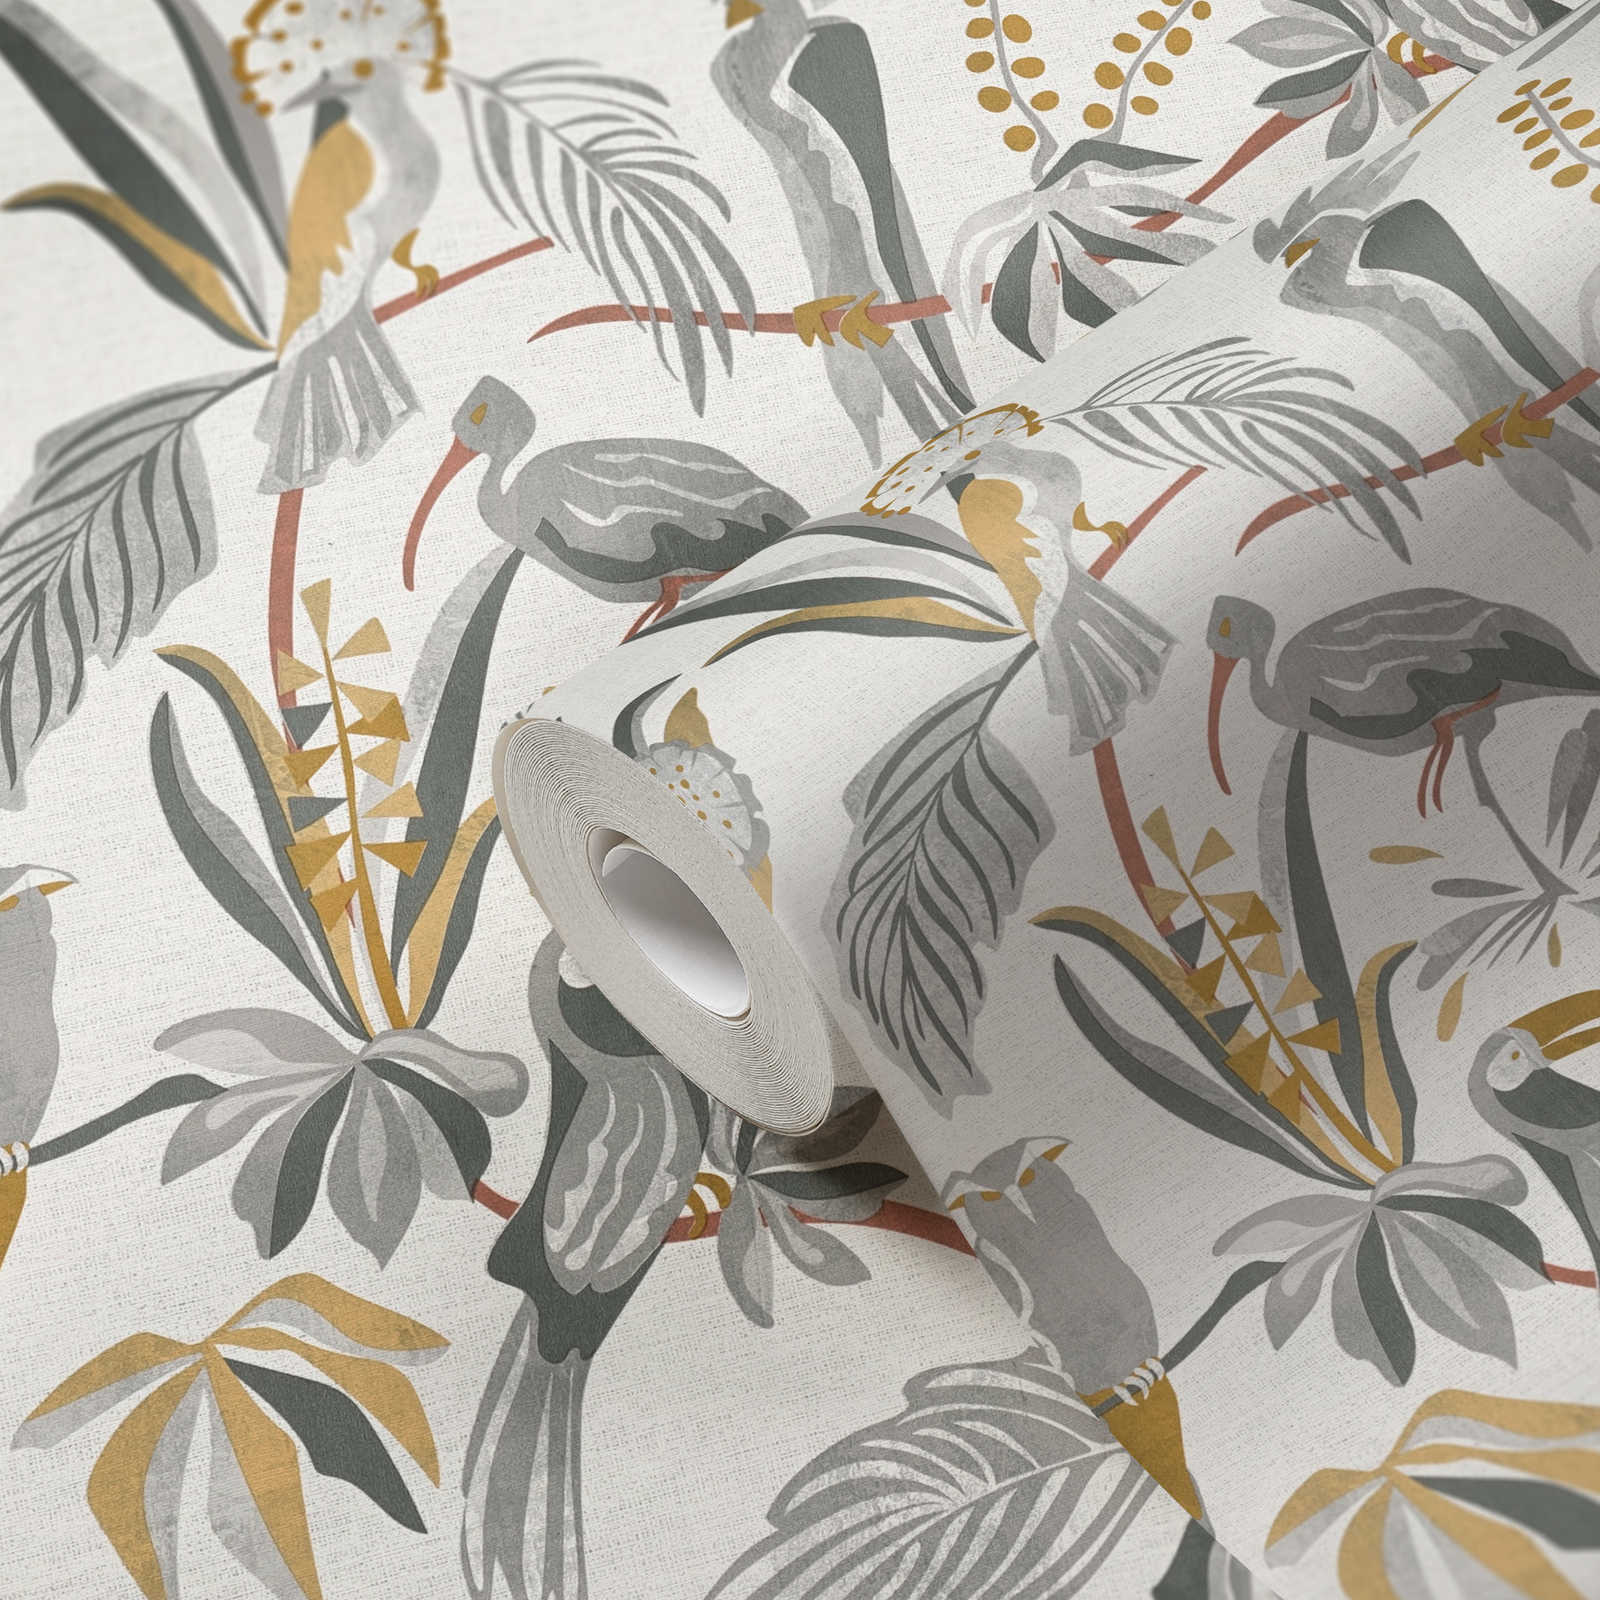             Dschungeltapete mit Palmblättern & Vögeln in Leinenoptik – Grau, Gold
        